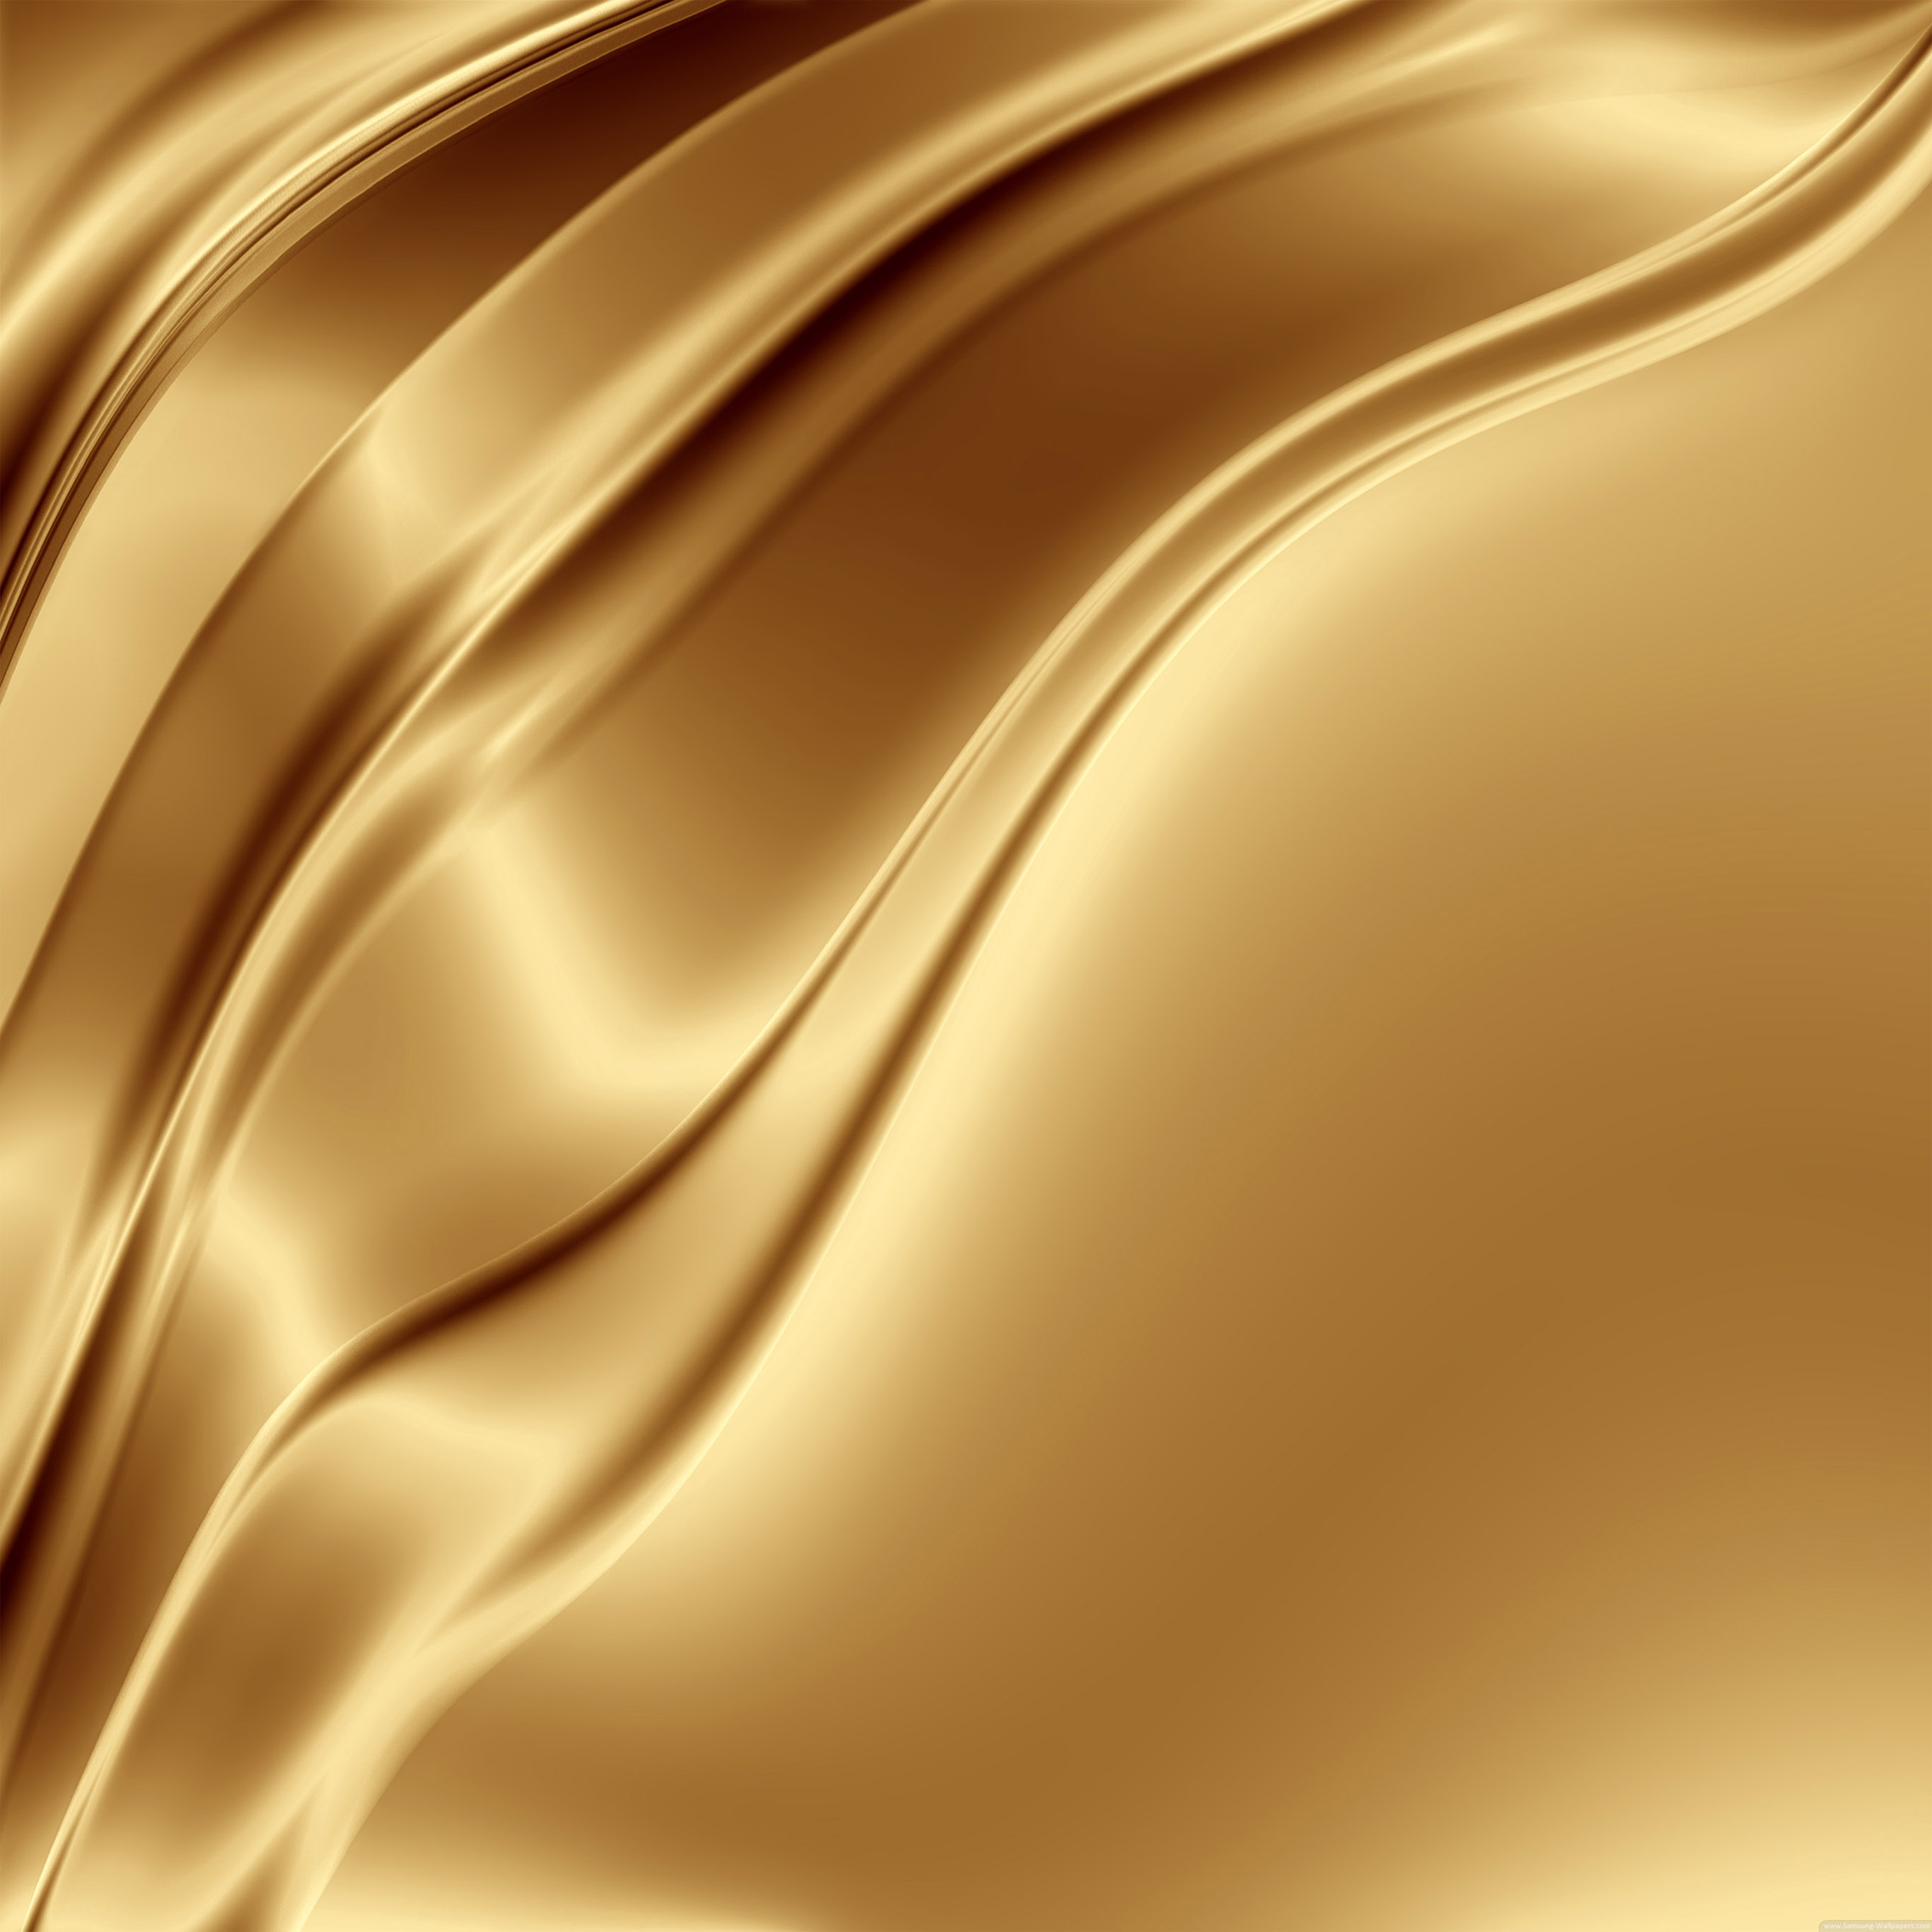 Sn gold. Золото металлик lx19240. Золотистый фон. Золото цвет. Золото текстура.